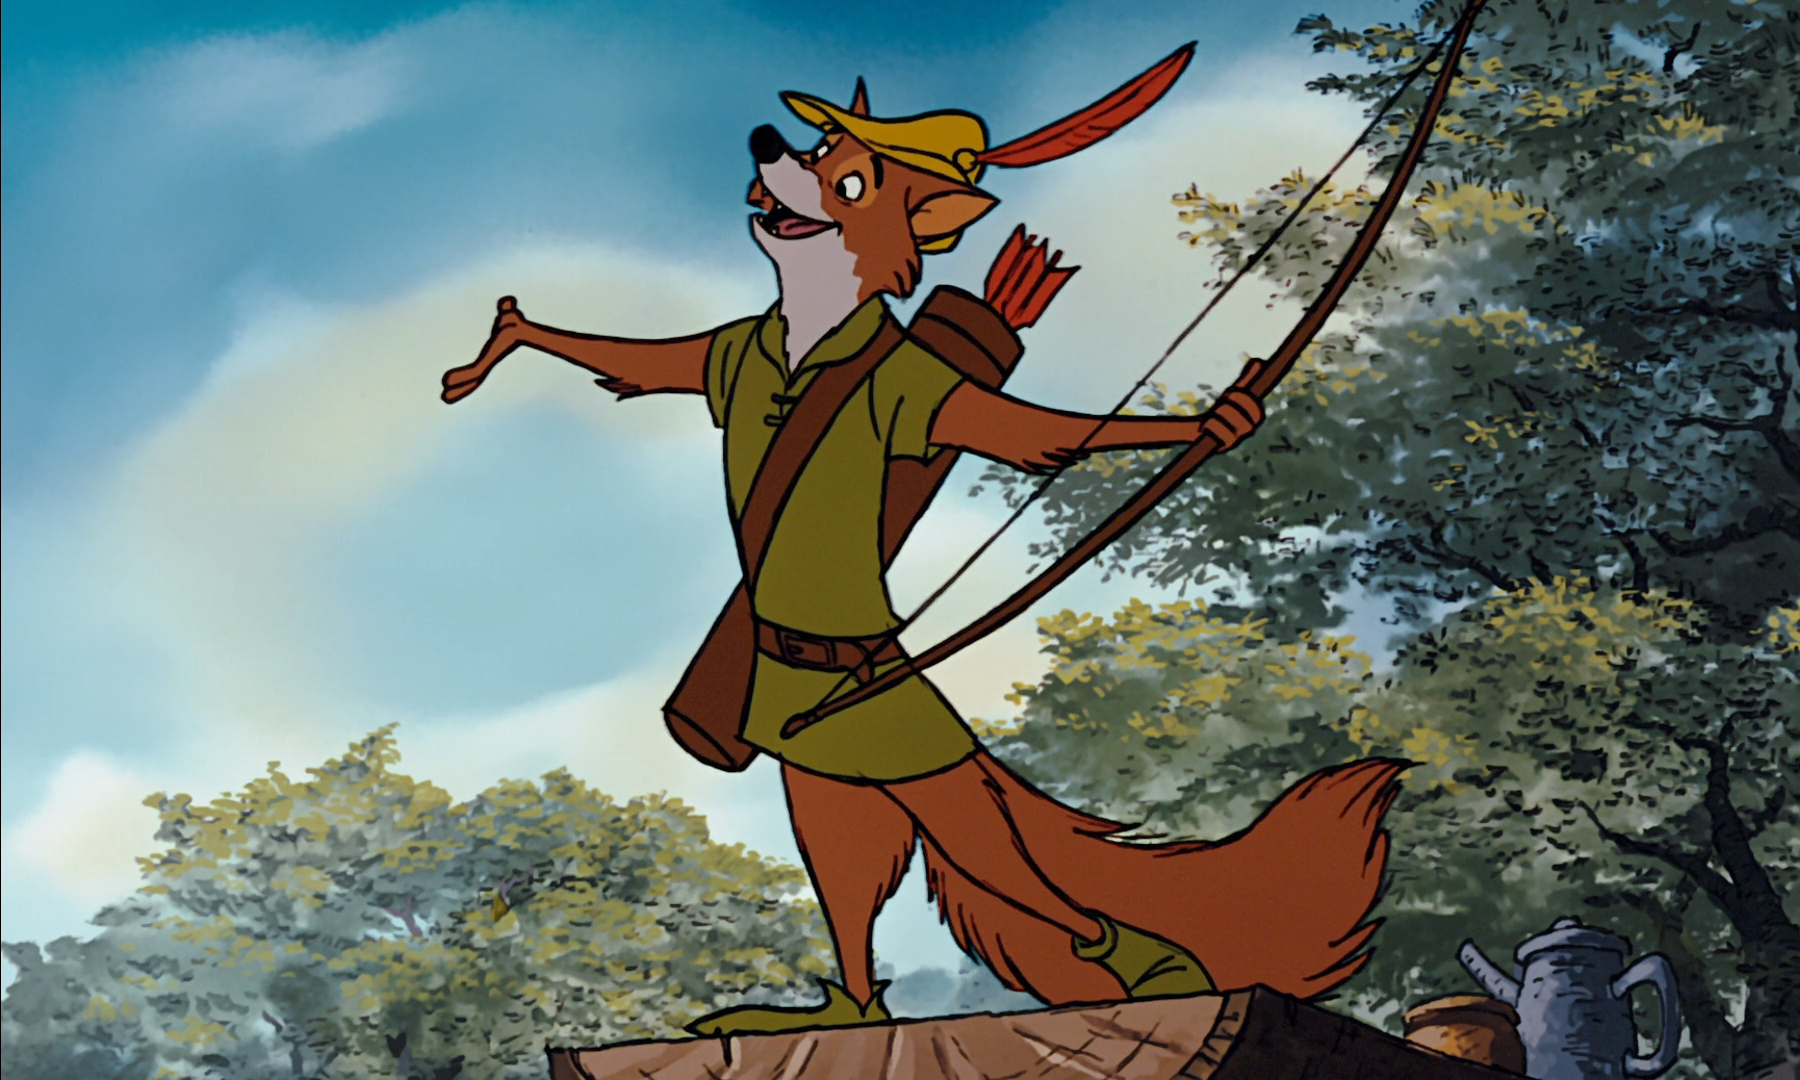 Maid Marian (Robin Hood) (c) 1973 Walt Disney Animation Studios  Disney  characters wallpaper, Robin hood disney, Walt disney animation